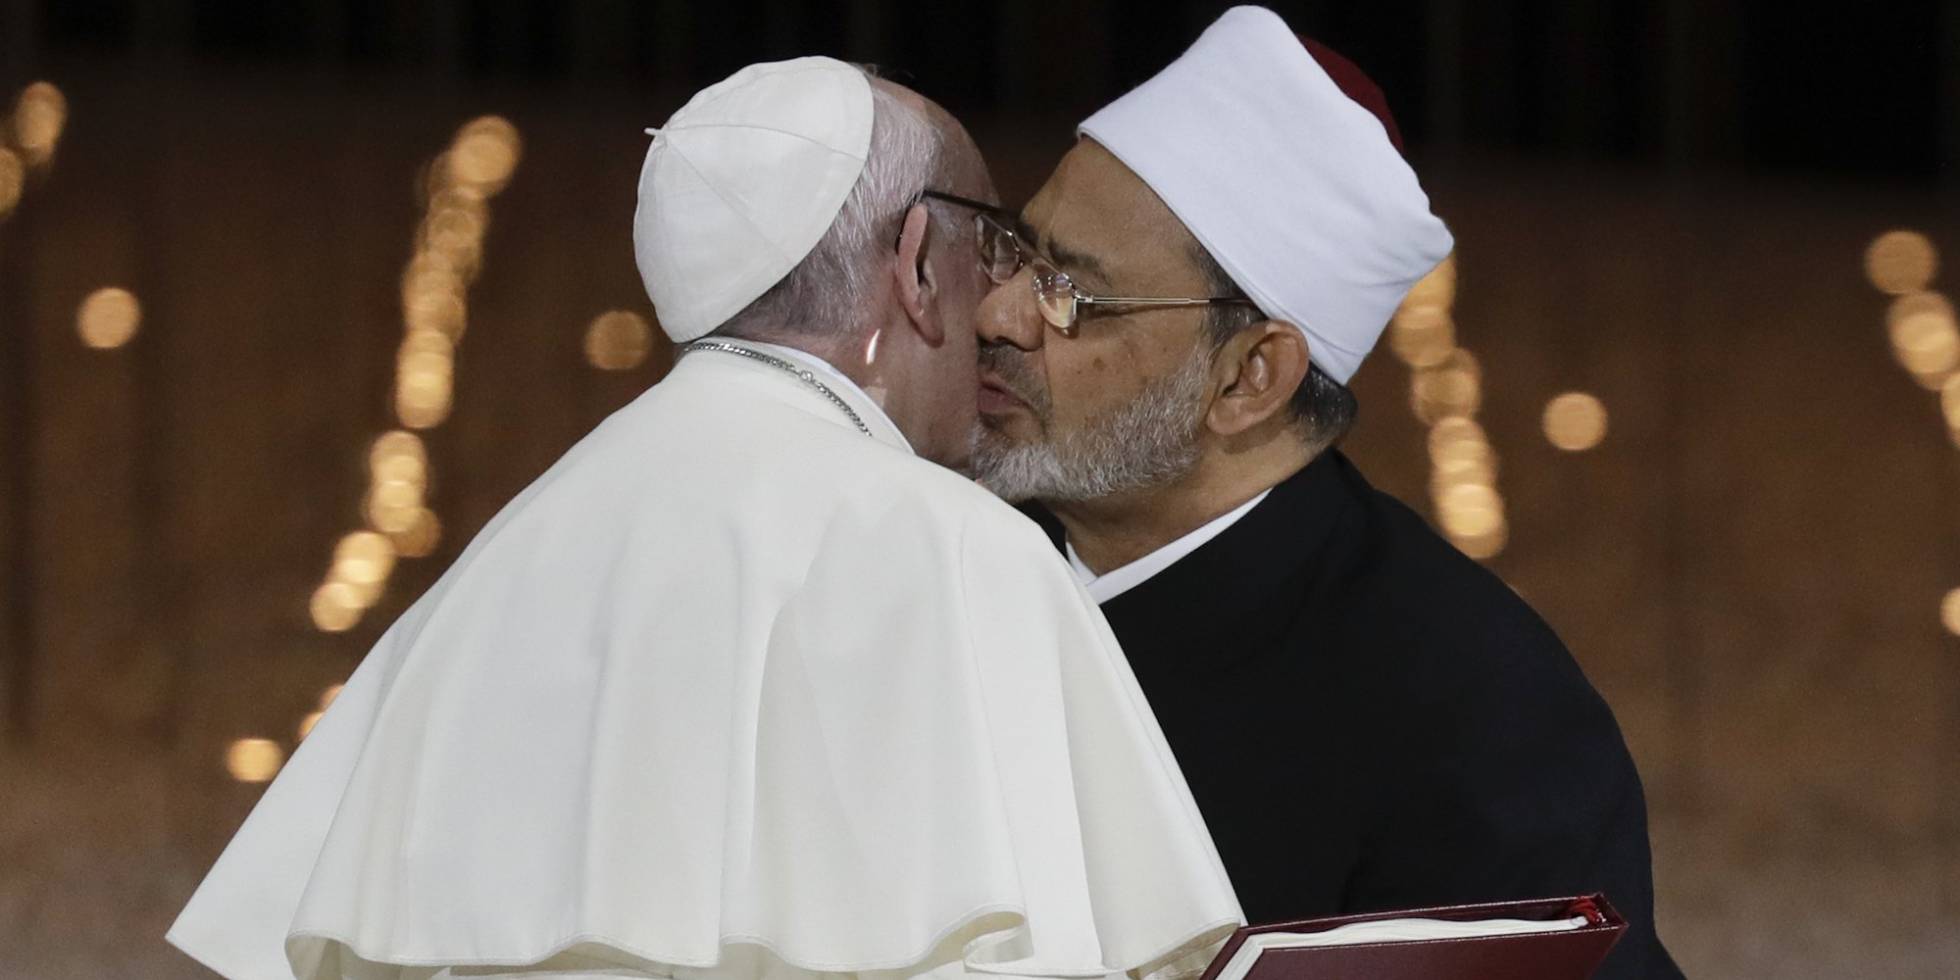 La foto del beso del papa Francisco que recorrió el mundo